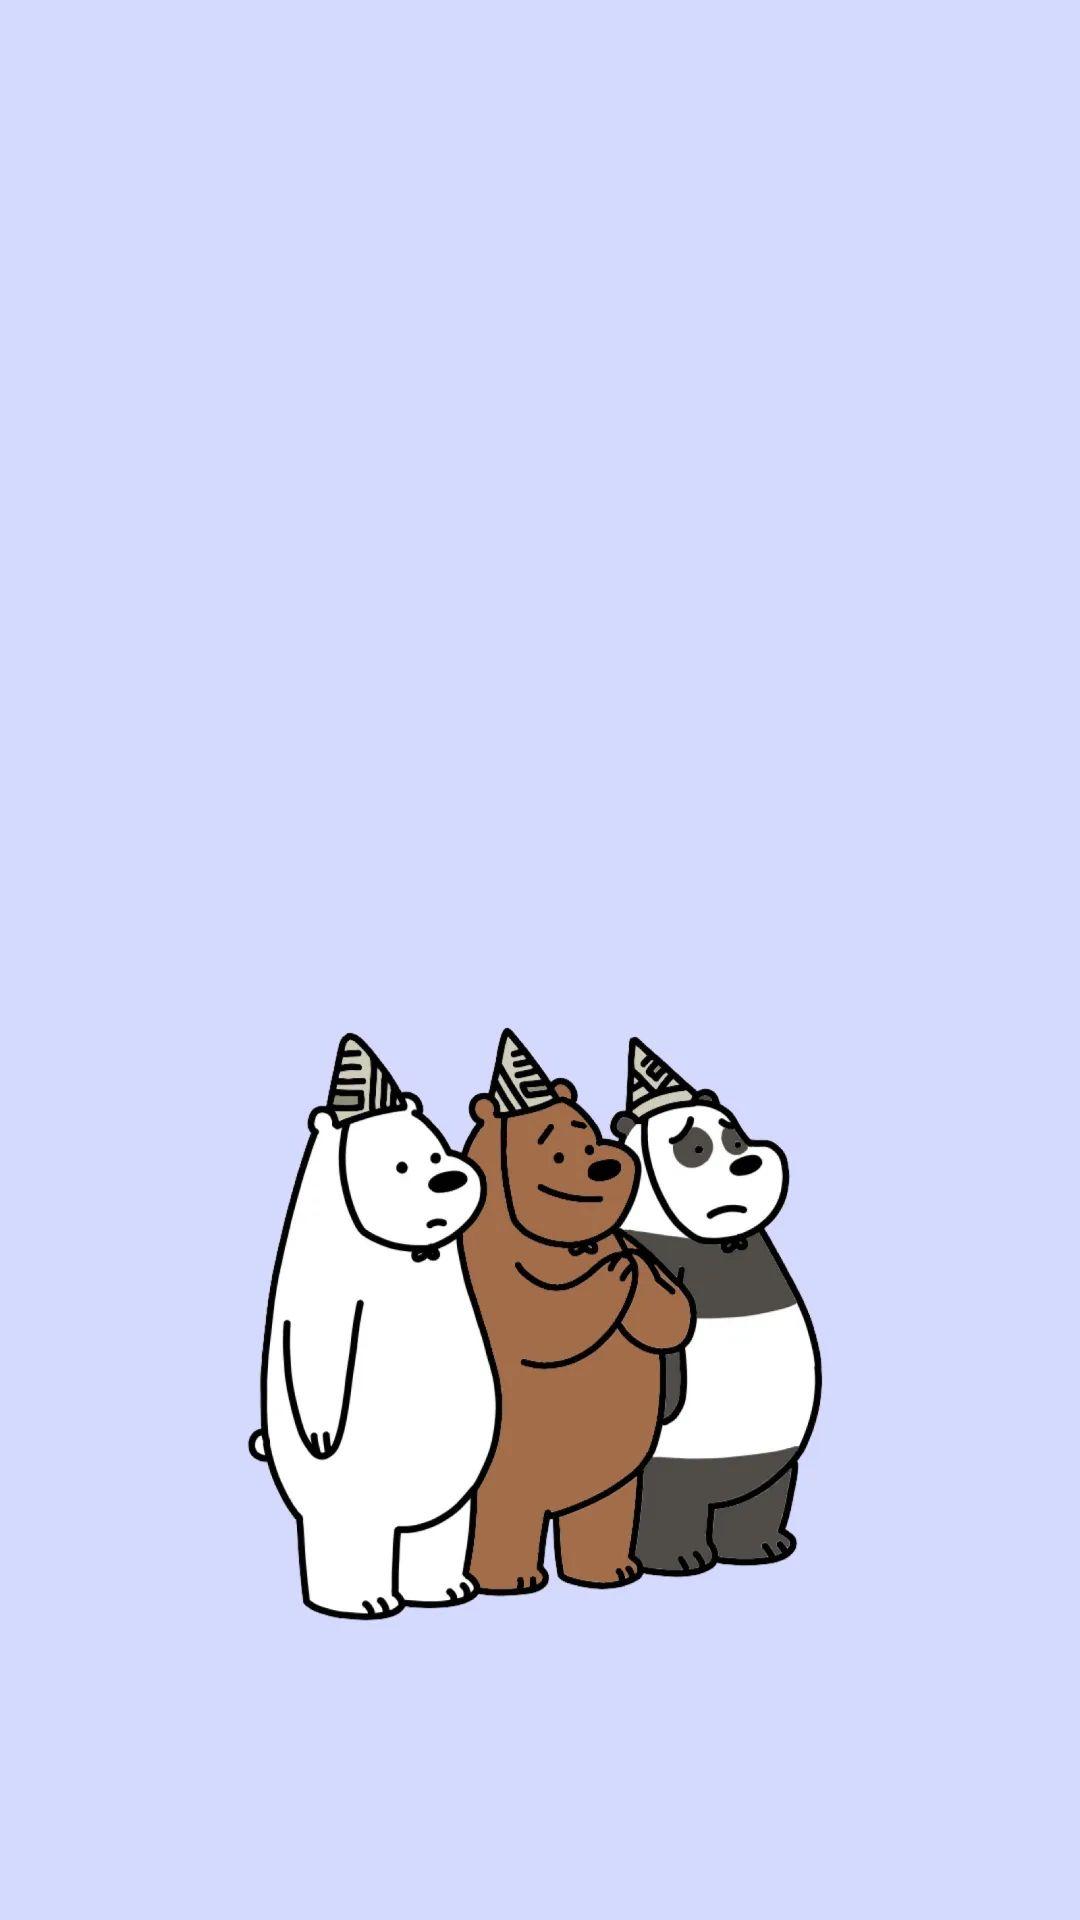 三只裸熊壁纸 竖屏图片